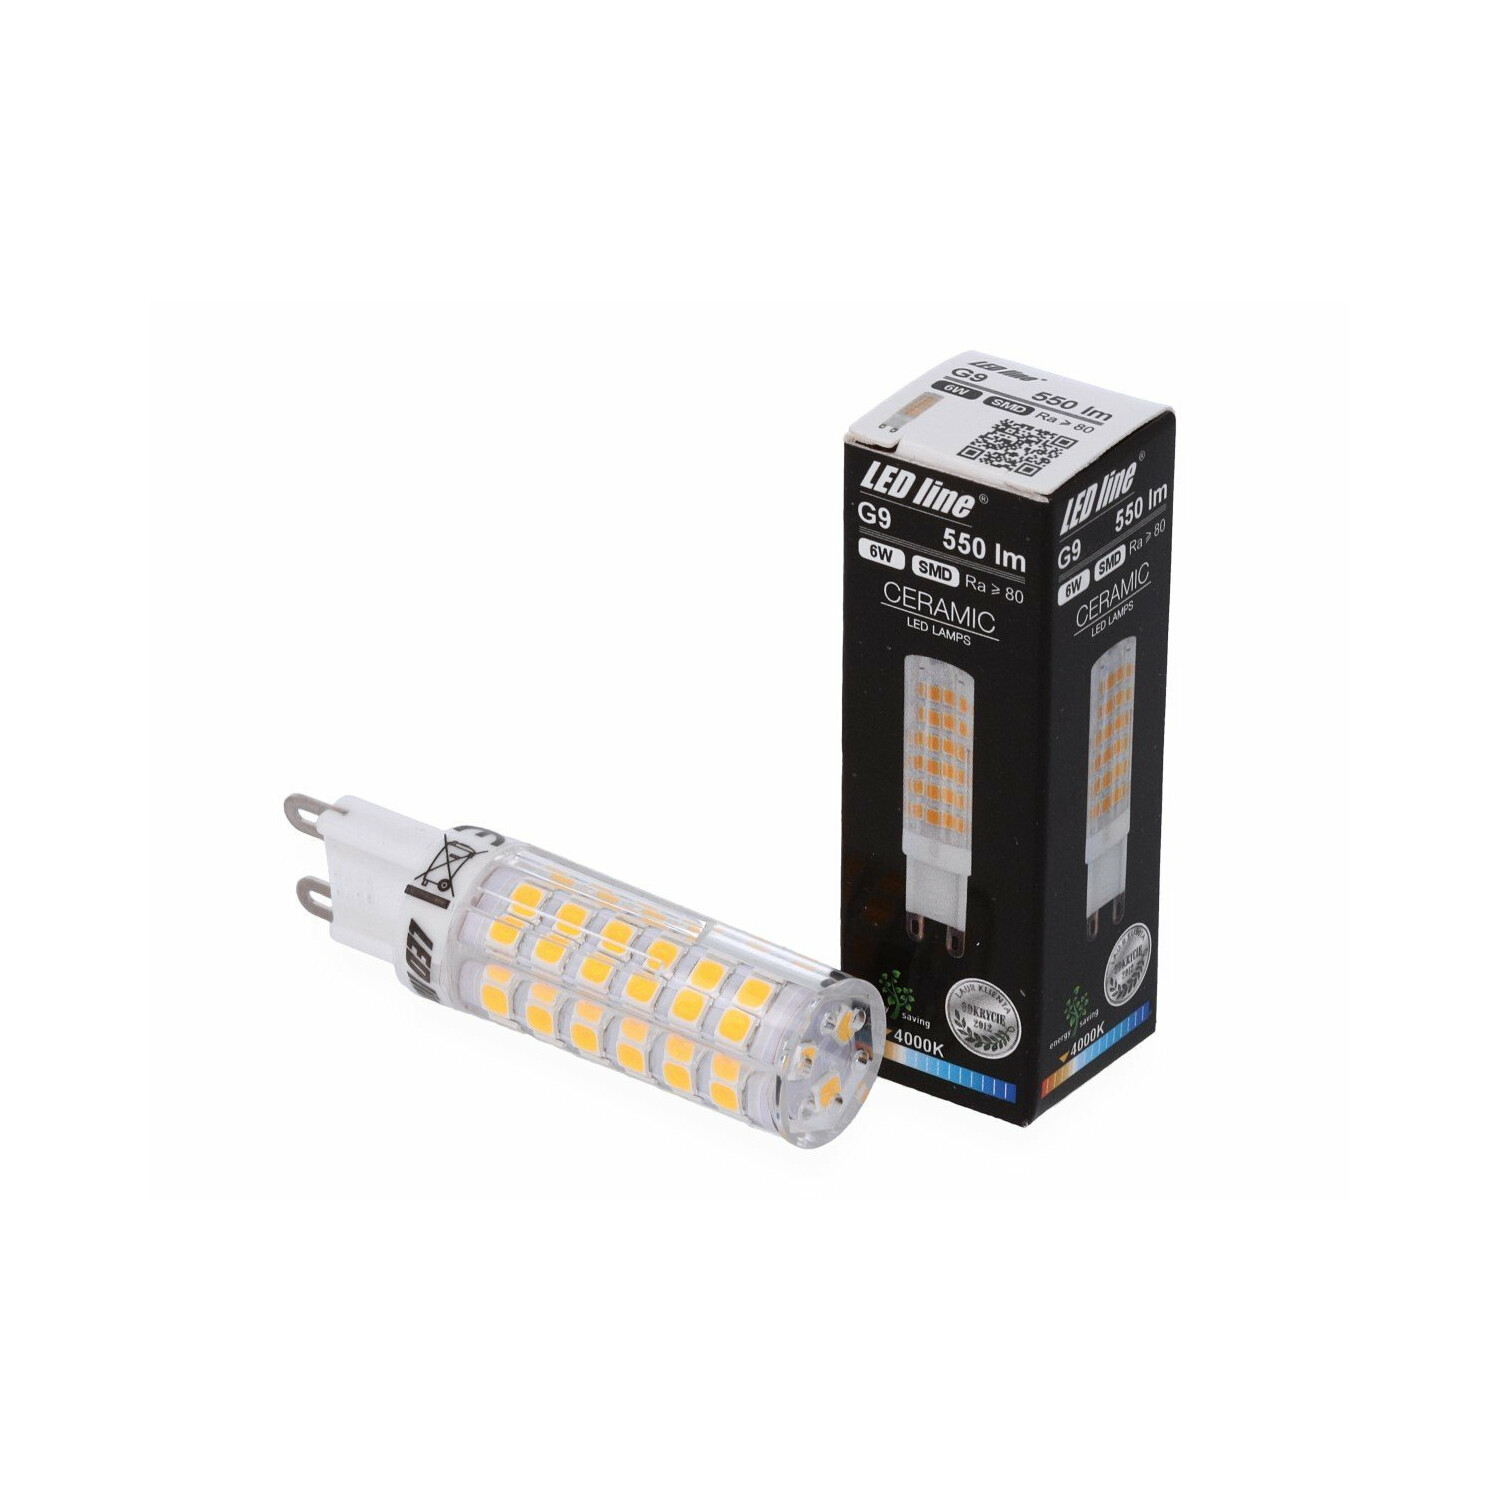 LED LINE 550 Neutralweiß Leuchtmittel LED G9 Pack 2er 6W Lumen LED